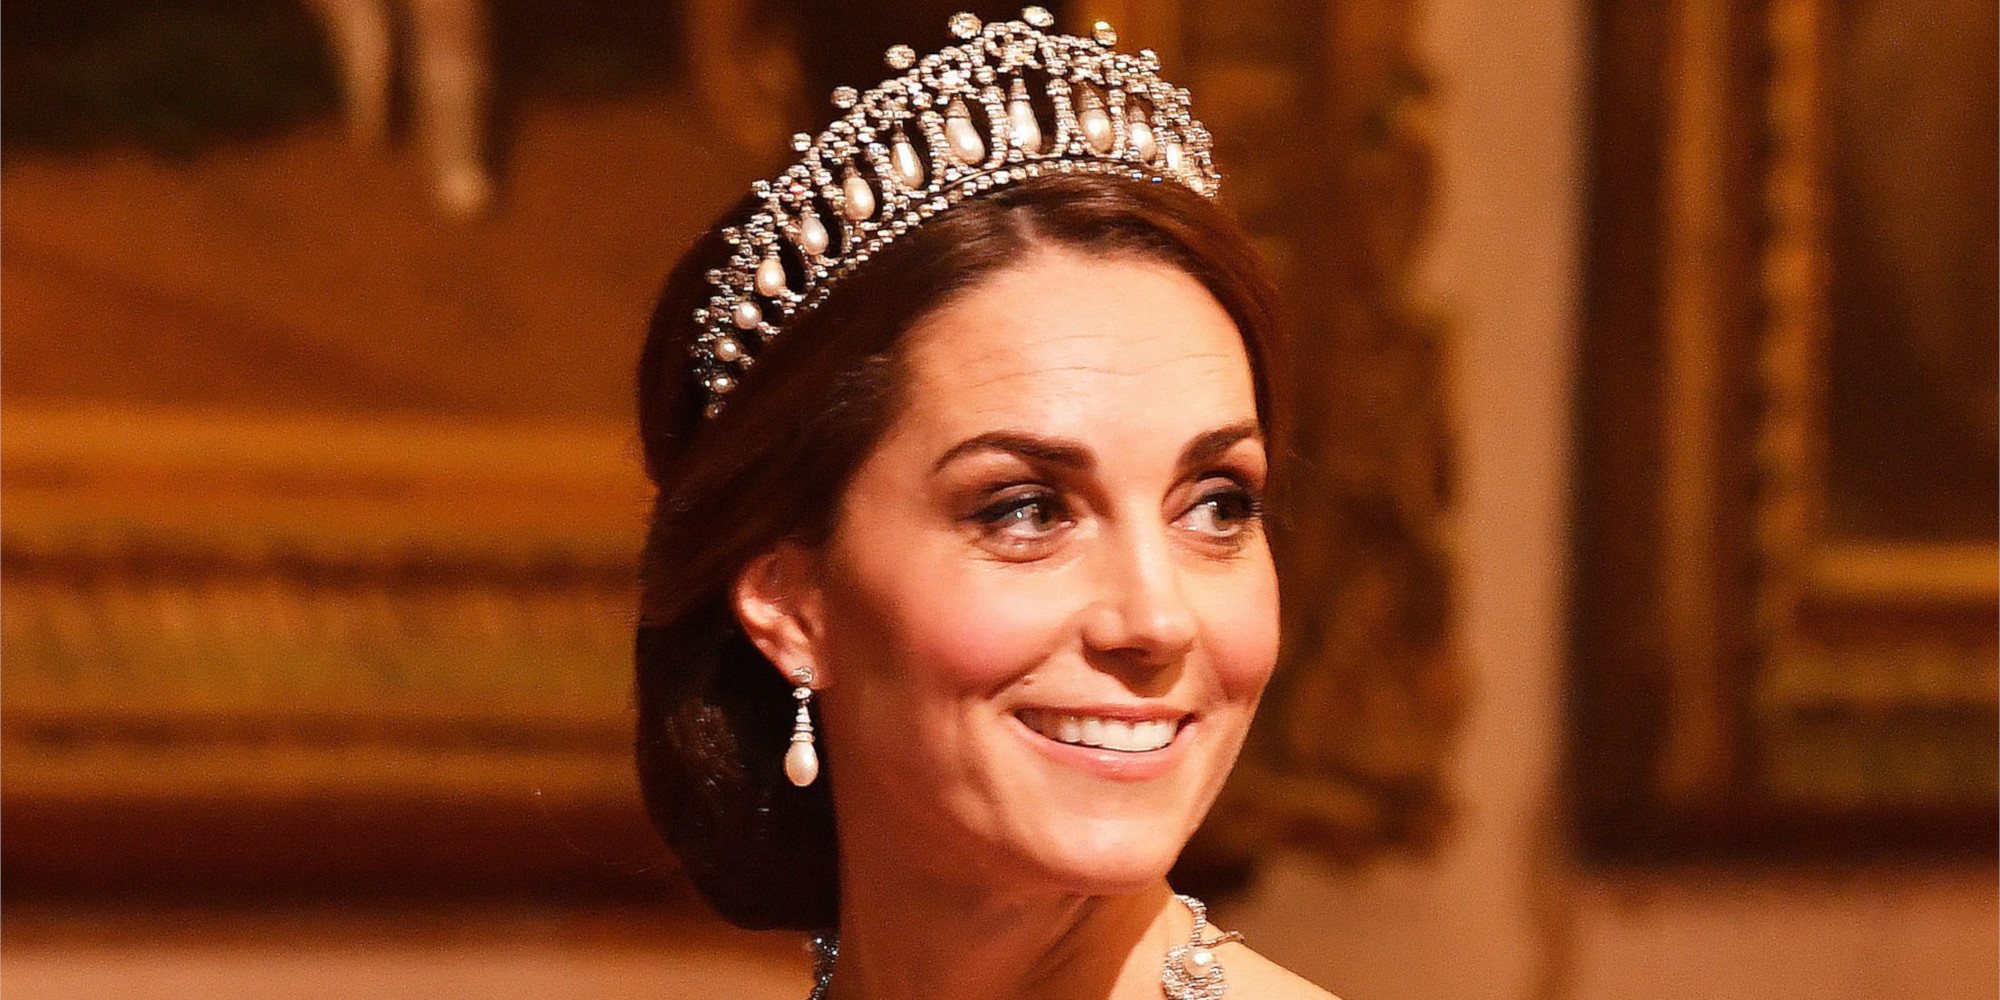 Kate Middleton revela cuál es su pizza preferida y deja una duda sobre la Reina Isabel